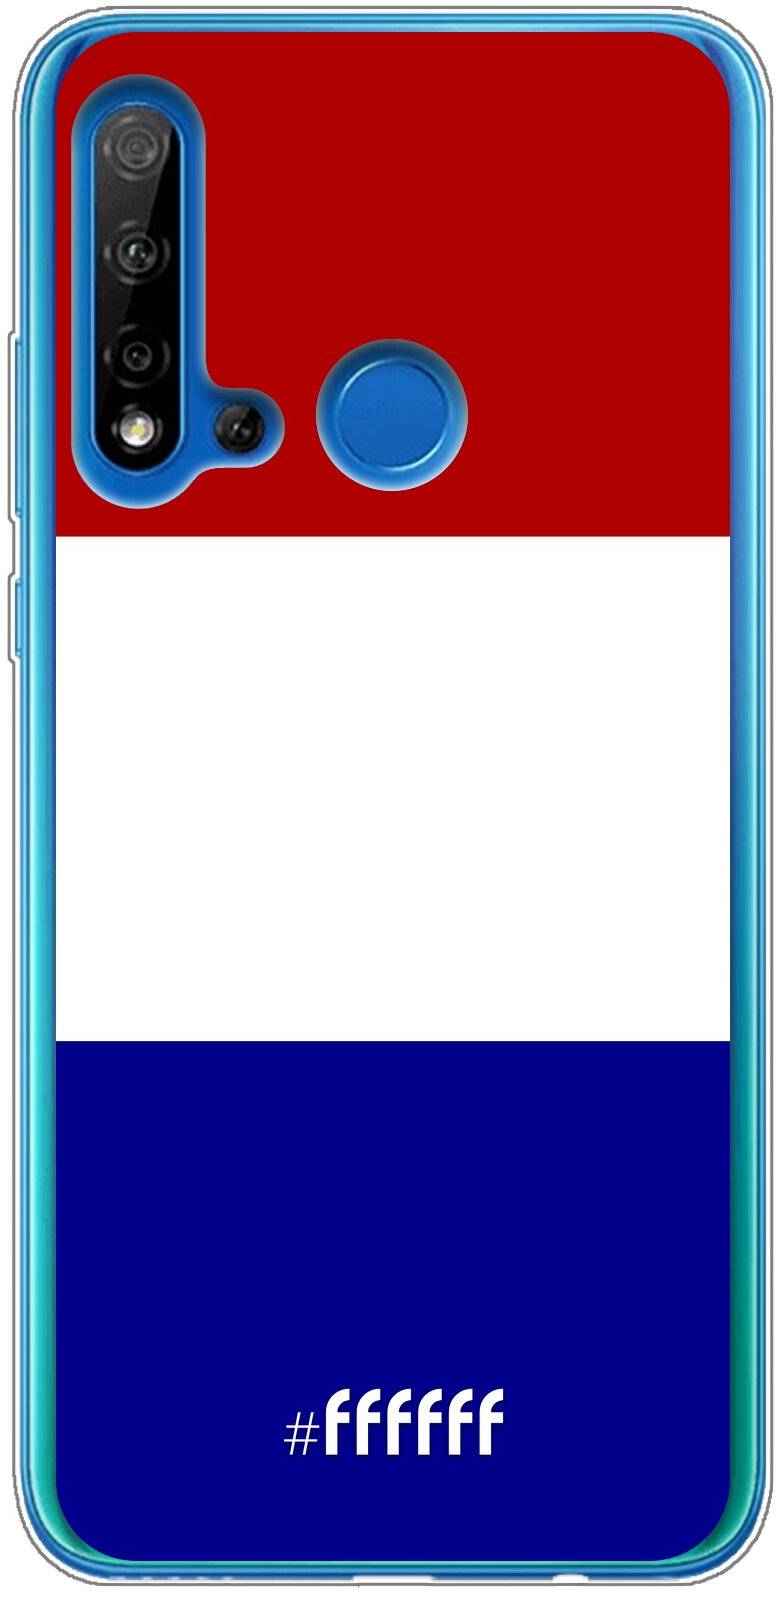 Nederlandse vlag P20 Lite (2019)